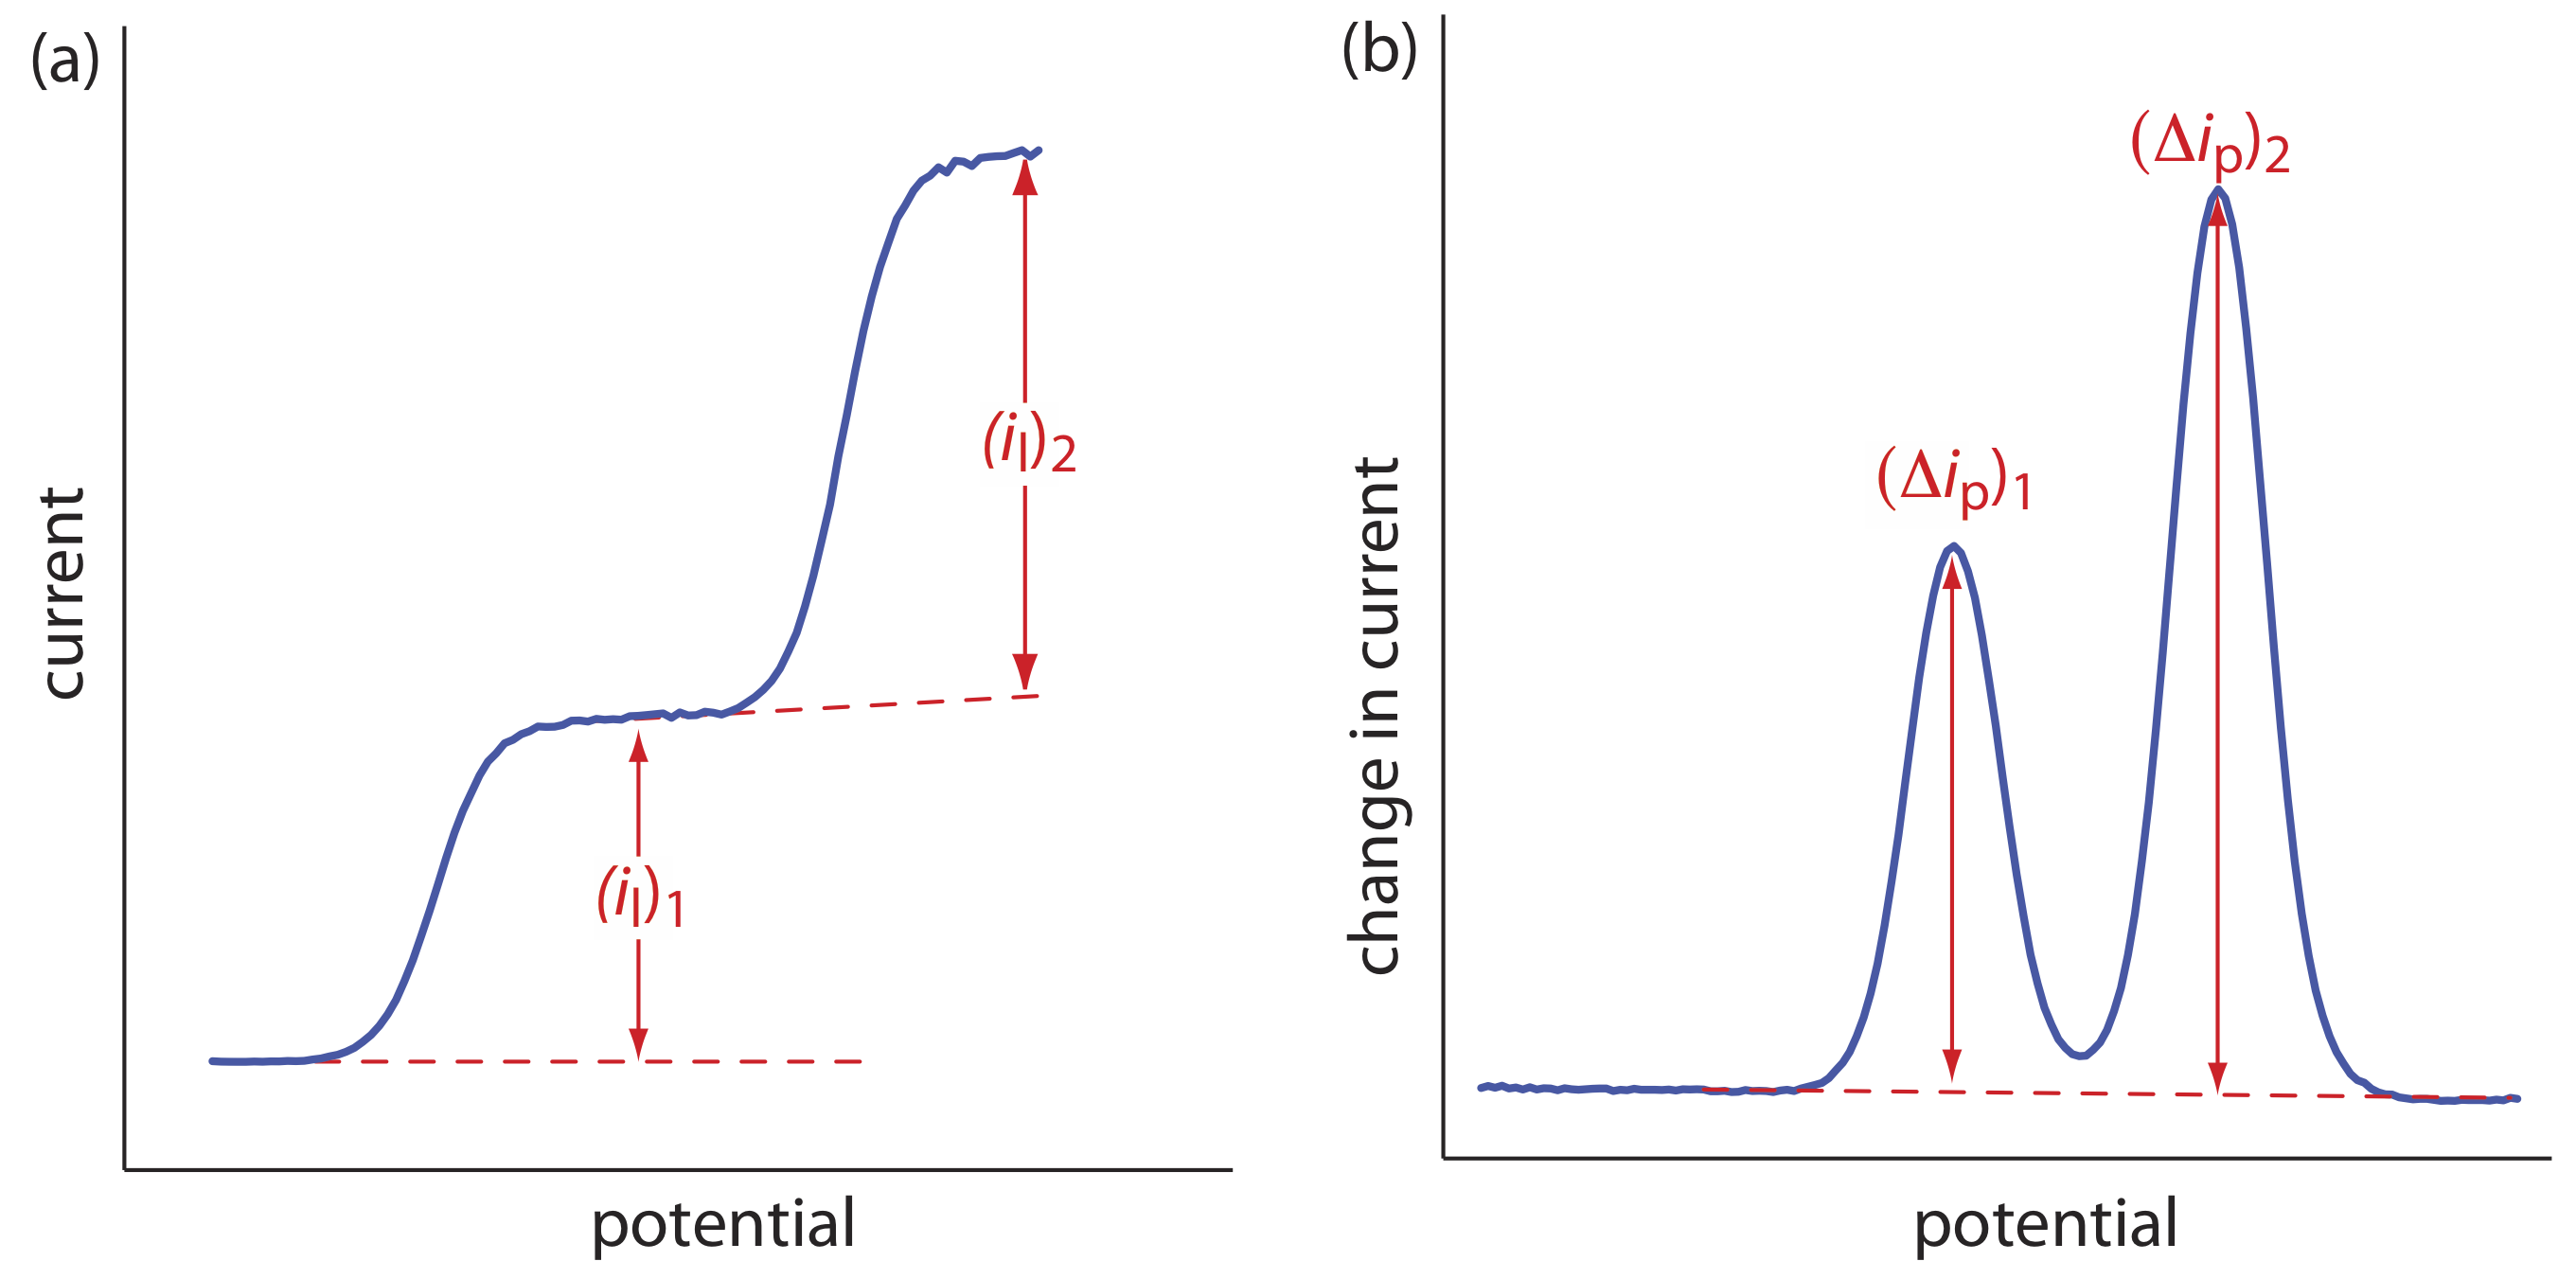 Voltamogramas para una muestra que contiene dos analitos que muestran la medición de (a) corrientes limitantes y (b) corrientes pico.